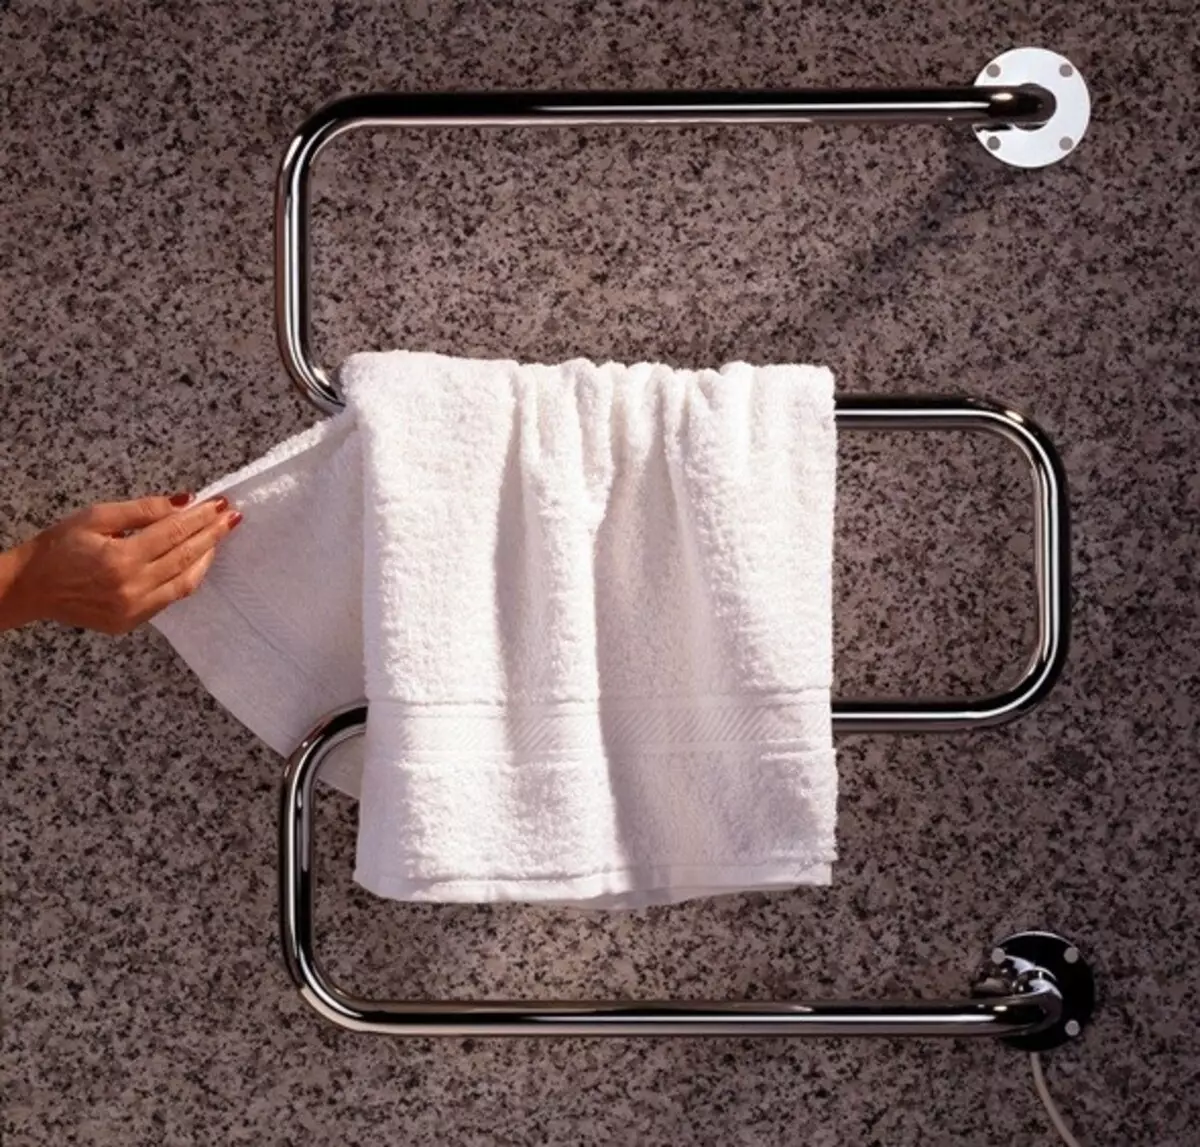 Μπορείτε να μειώσετε τον αέρα από τη θερμαινόμενη πετσέτα με τη βοήθεια του 